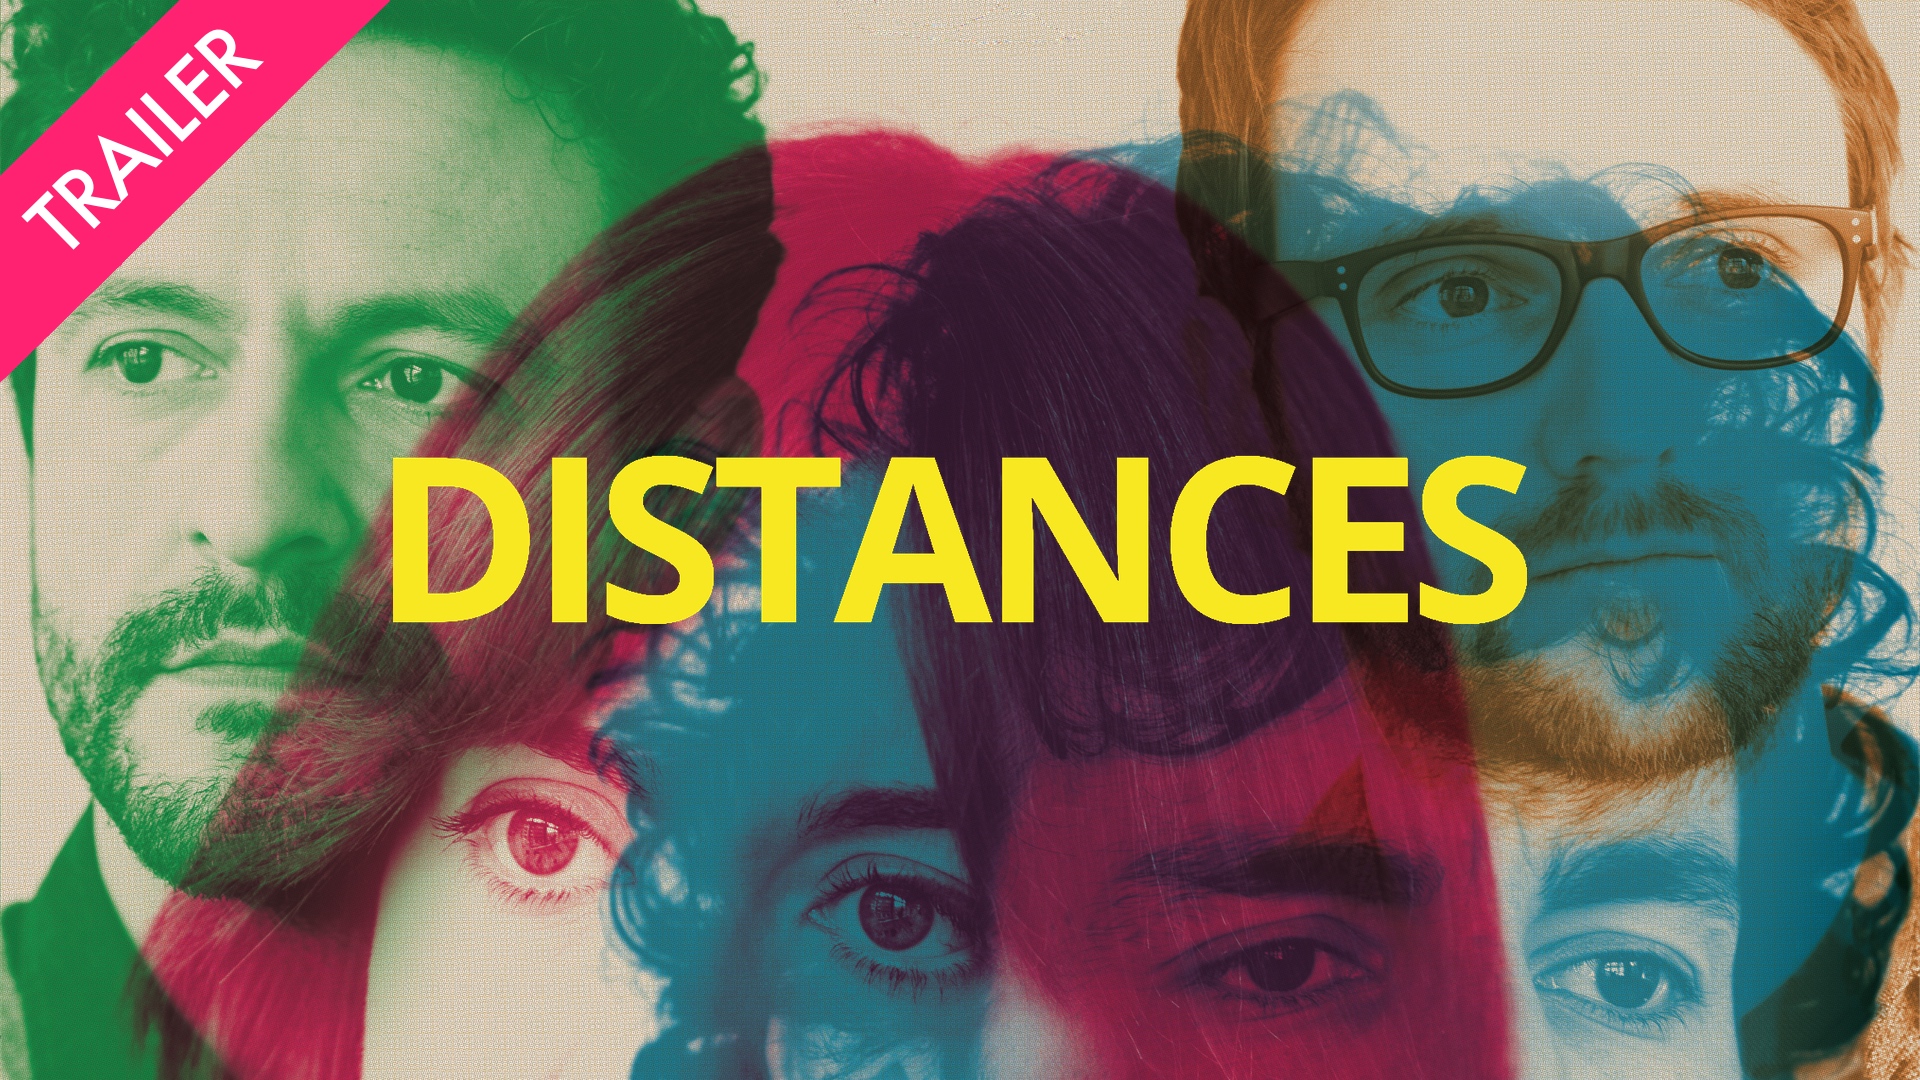 Distances